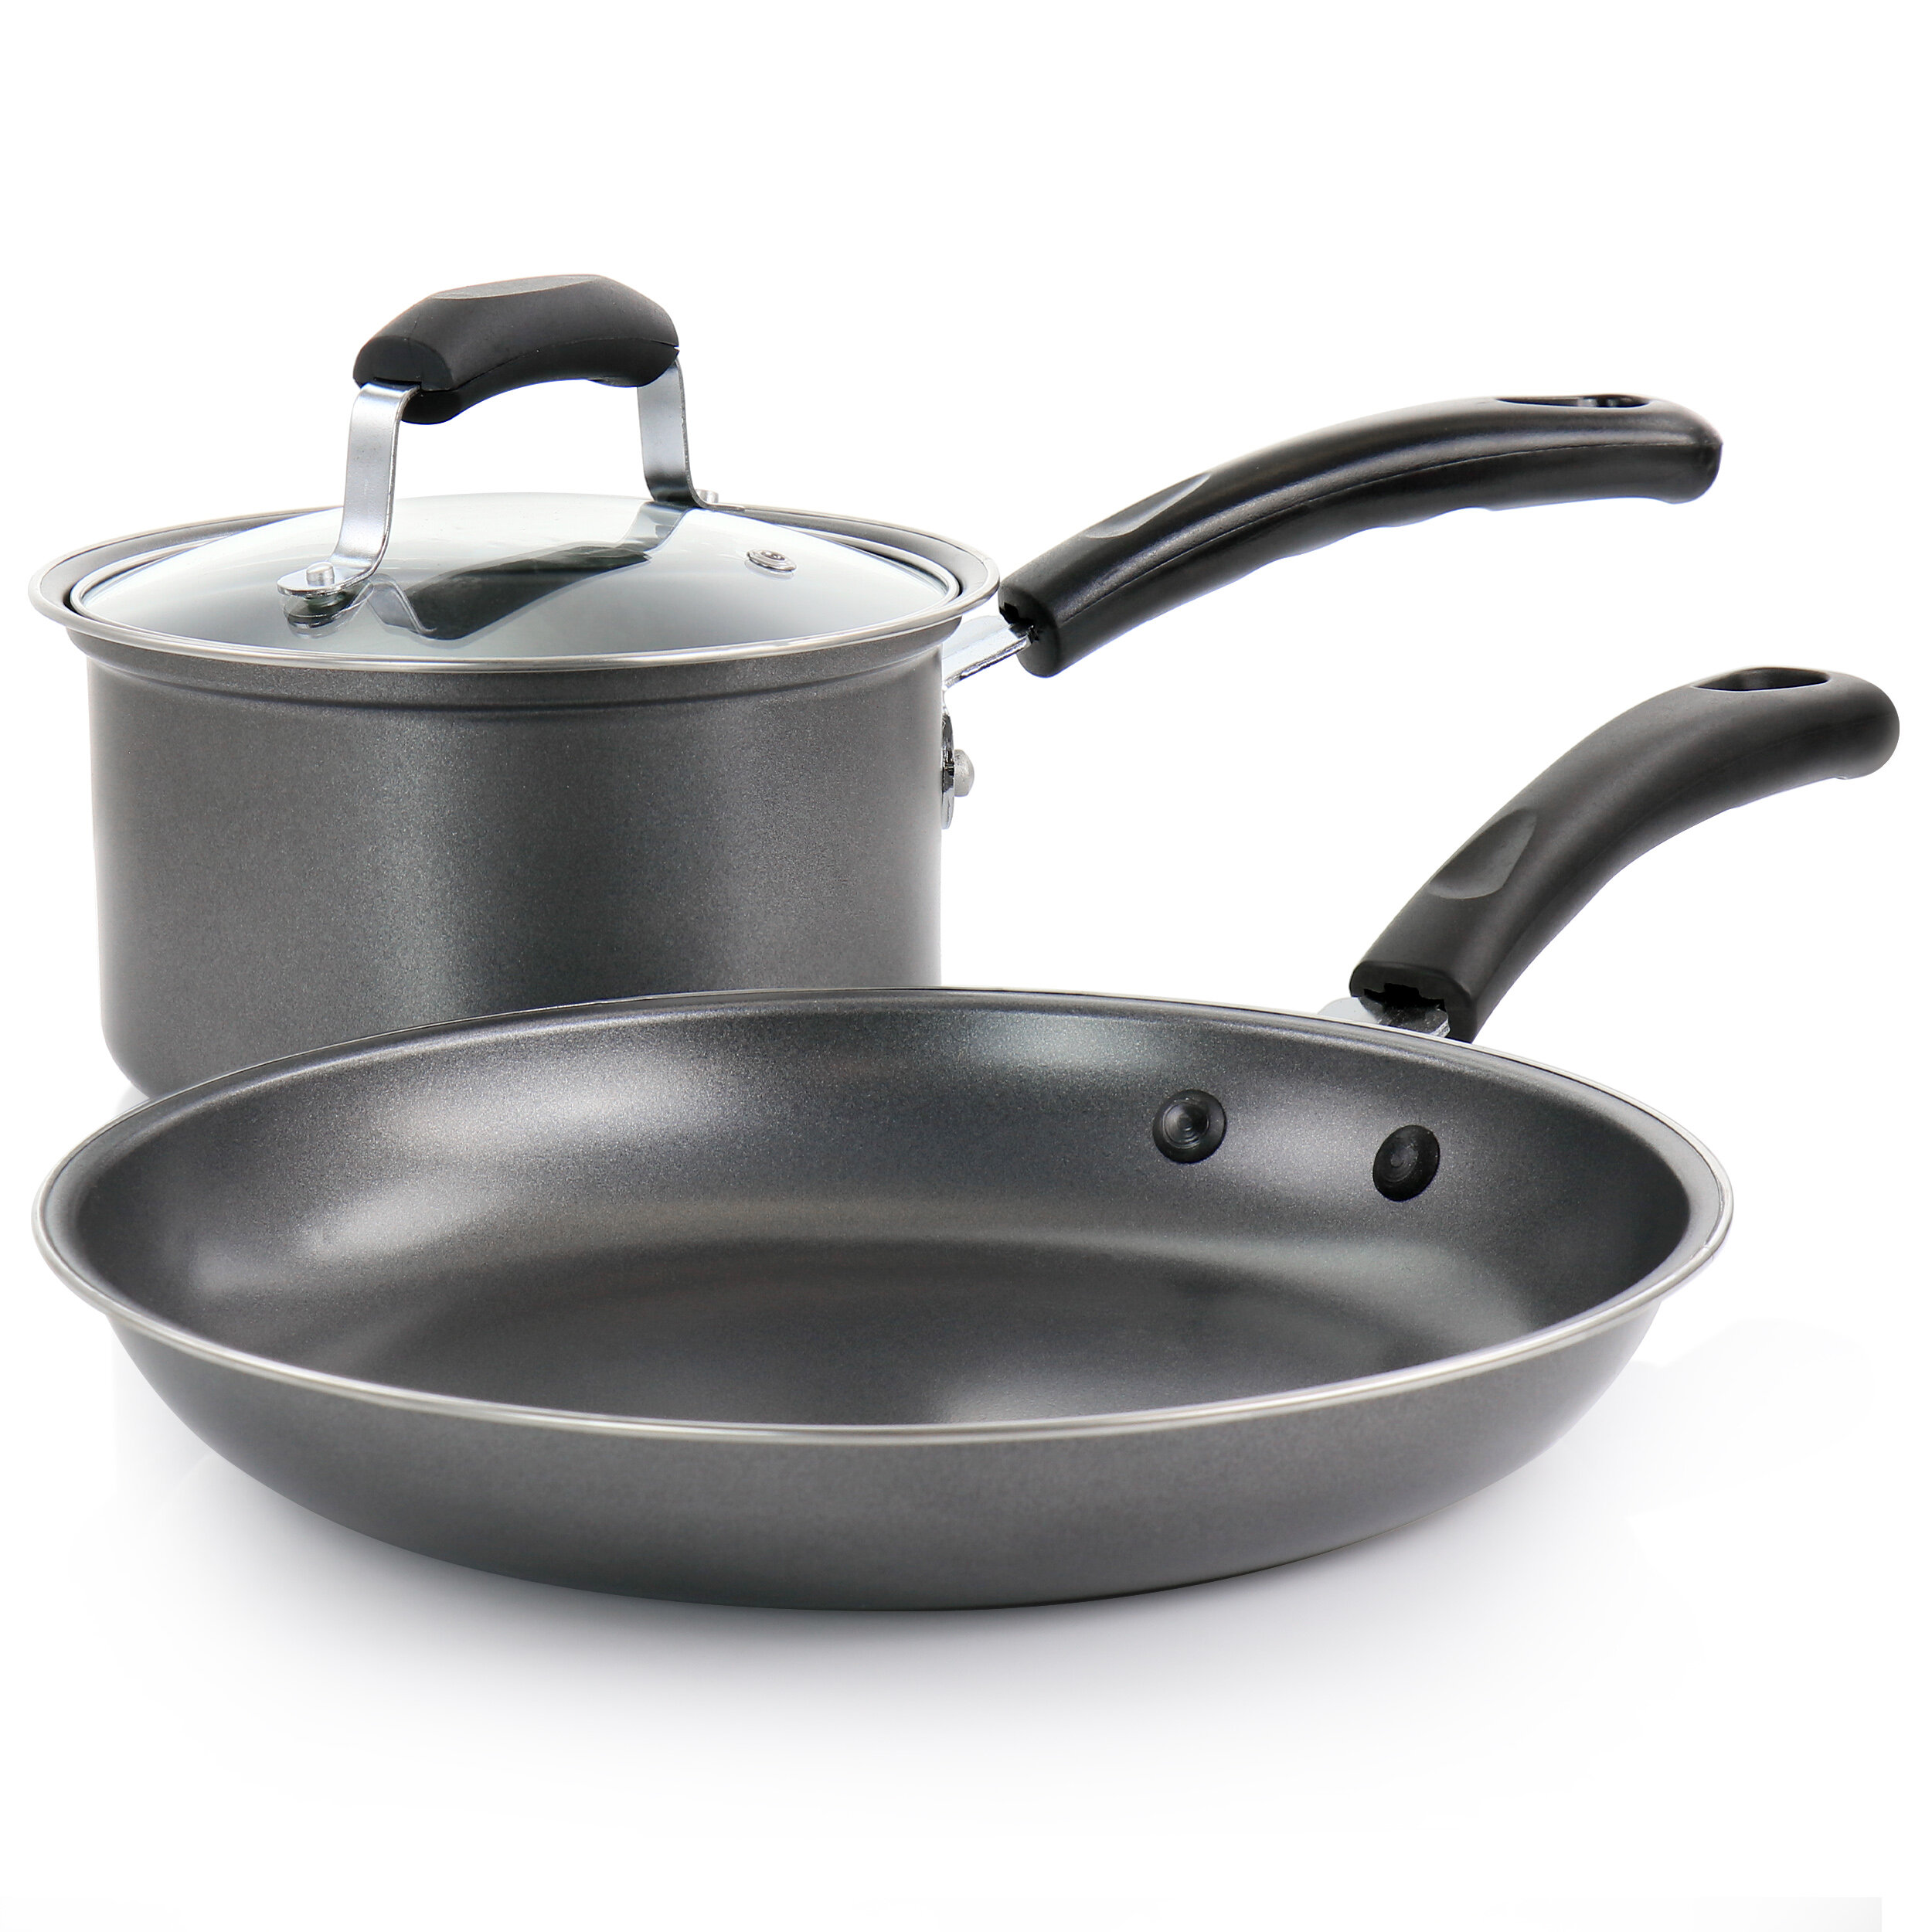 https://assets.wfcdn.com/im/26588041/compr-r85/1846/184662581/3-piece-non-stick-carbon-steel-cookware-set.jpg